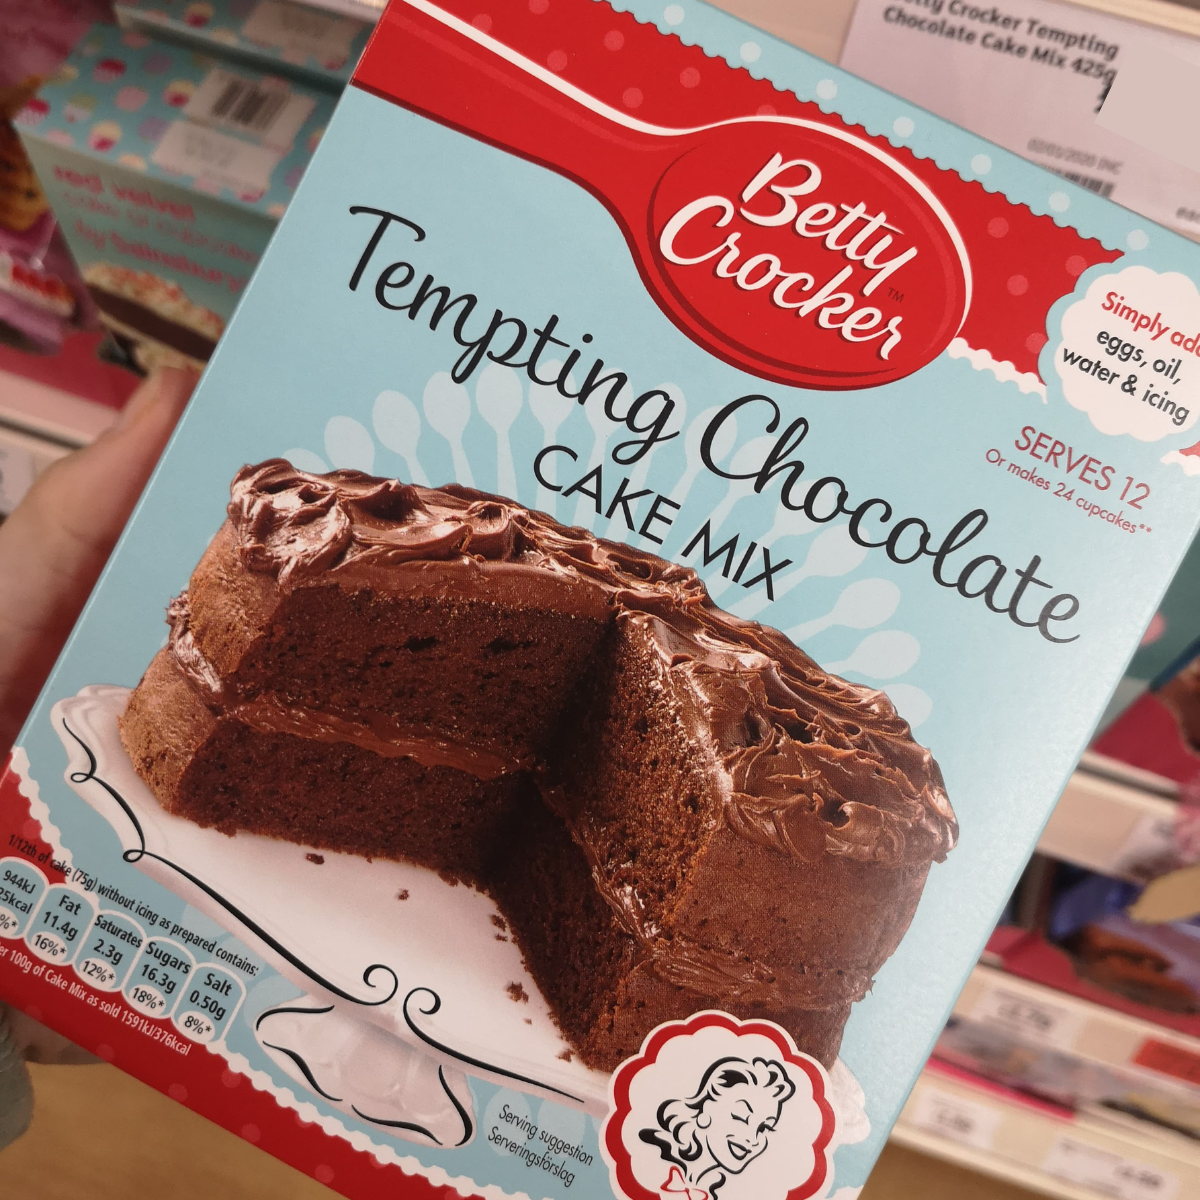 Betty Crocker Tempting Chocolate Cake Mix - Preparato Per Torte Al Cioccolato (425 G)